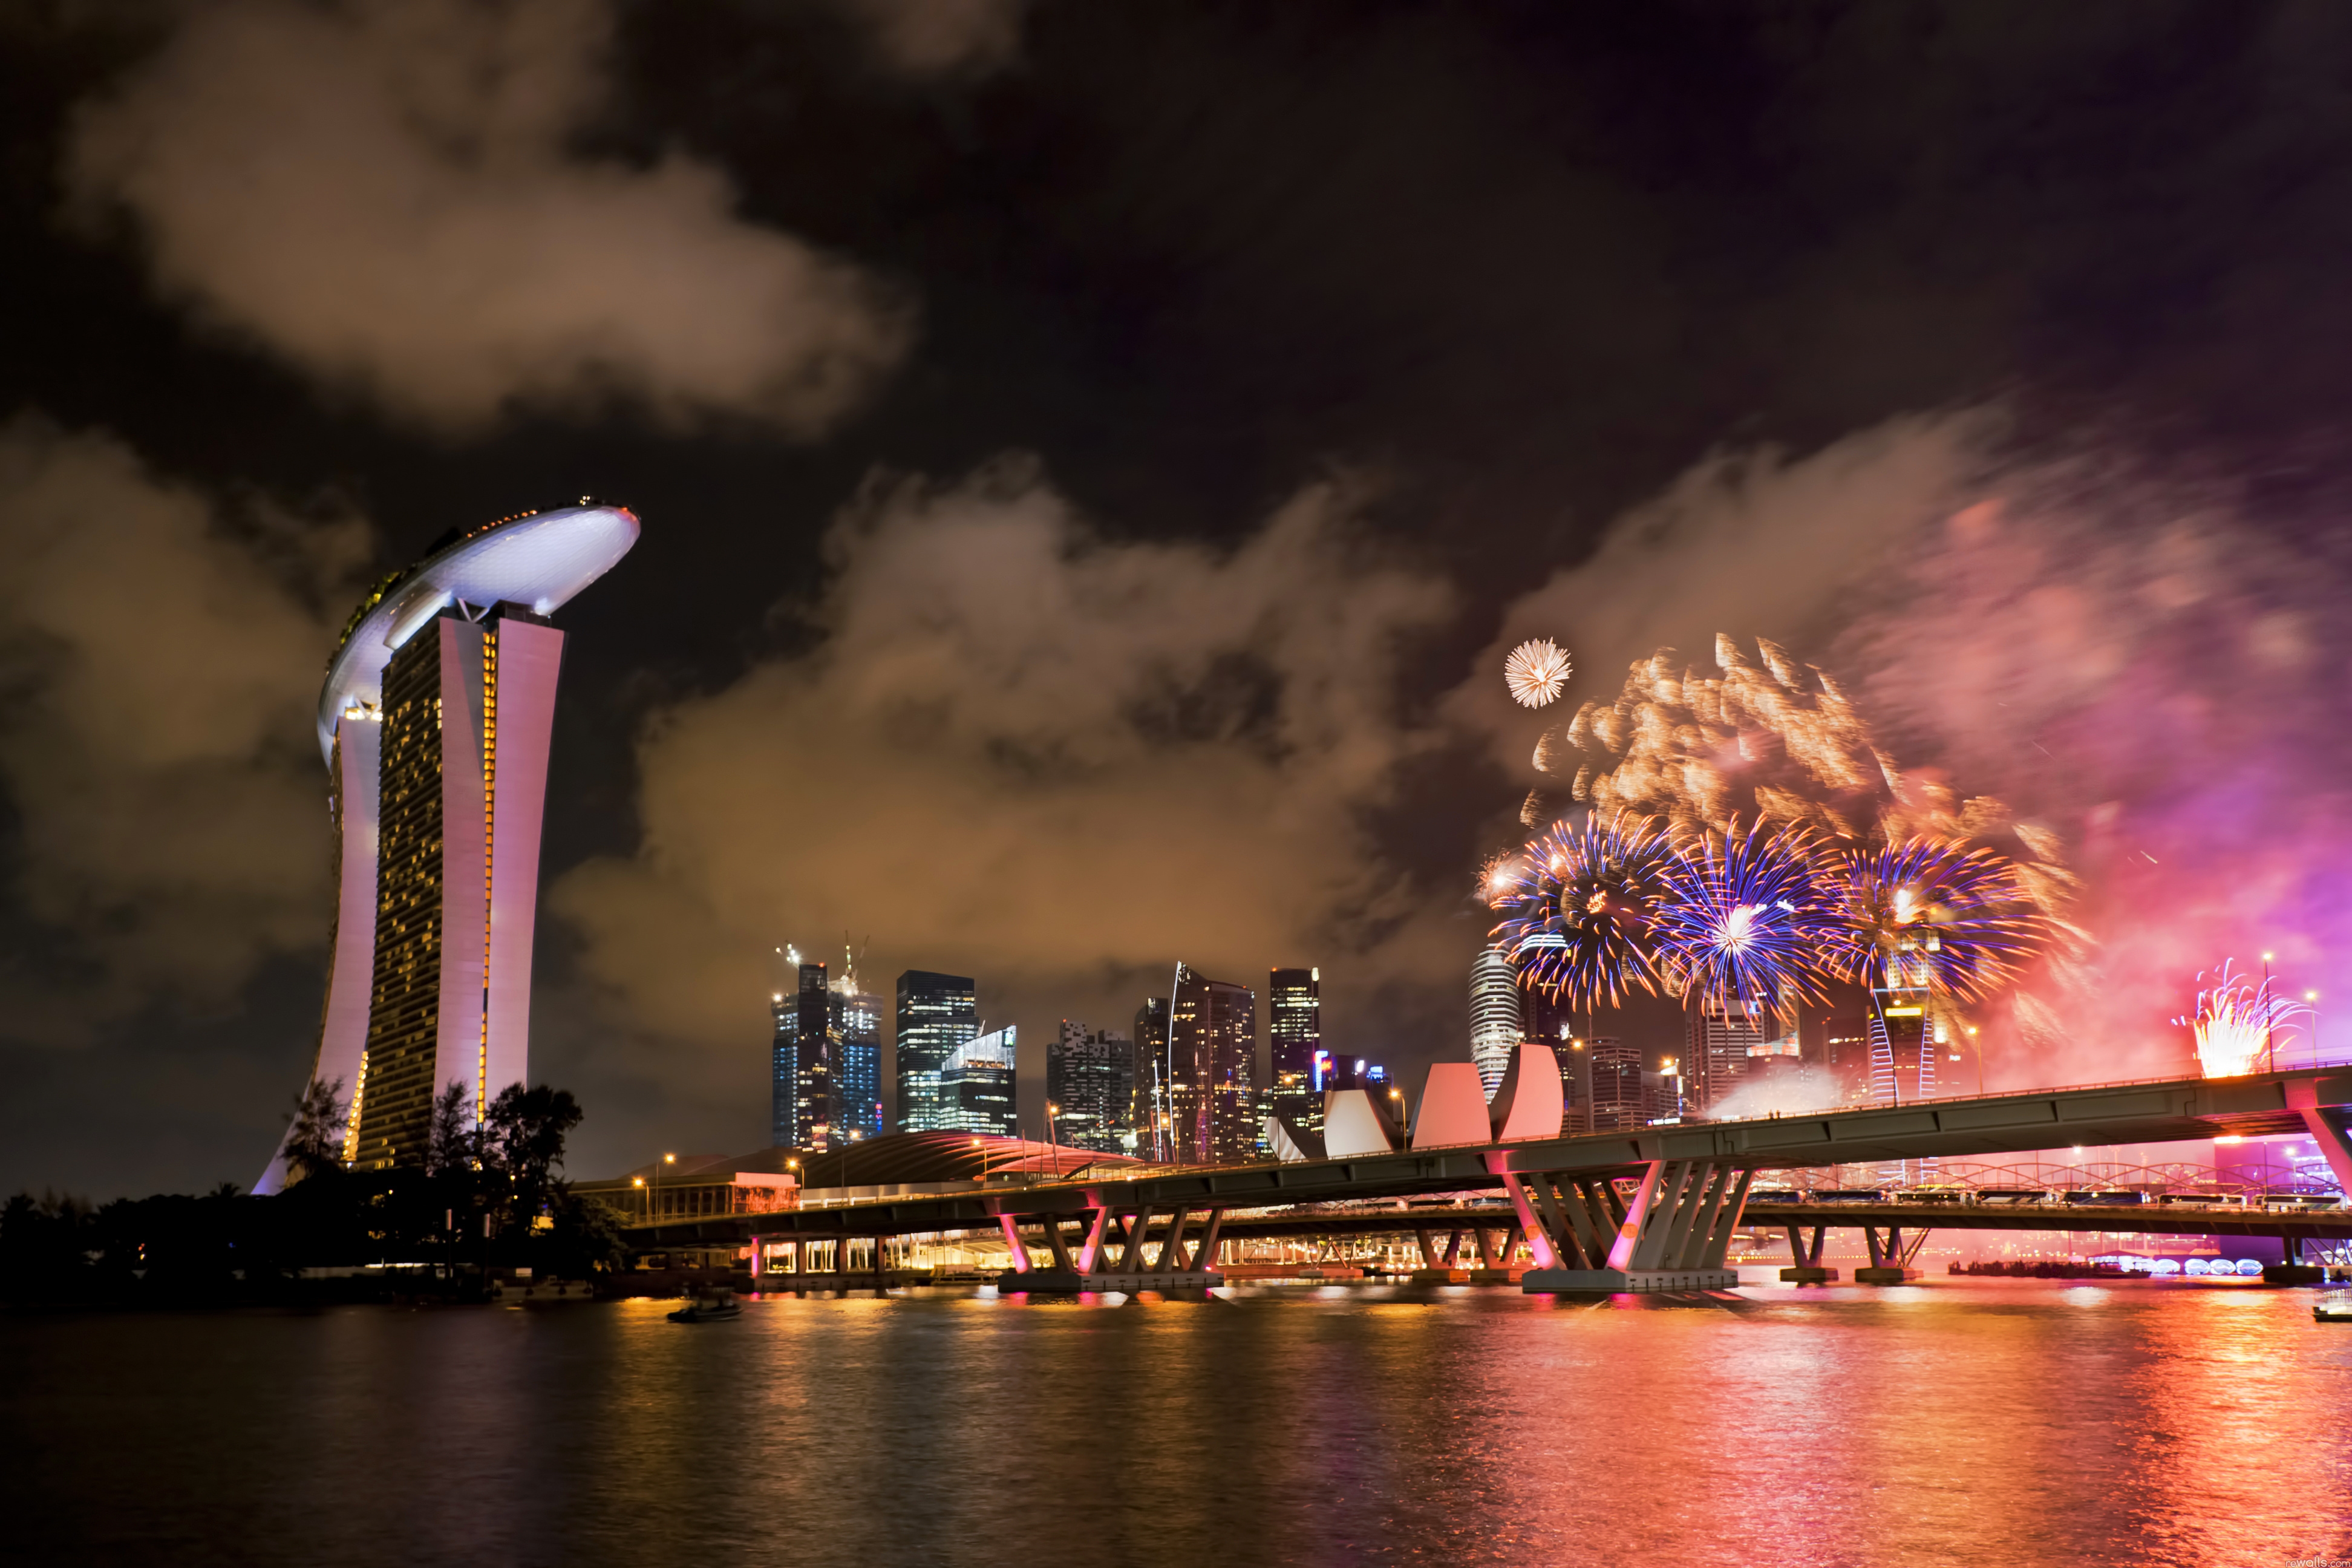 131045 Заставки и Обои Фейерверк на телефон. Скачать сингапур, мост, города, праздник картинки бесплатно